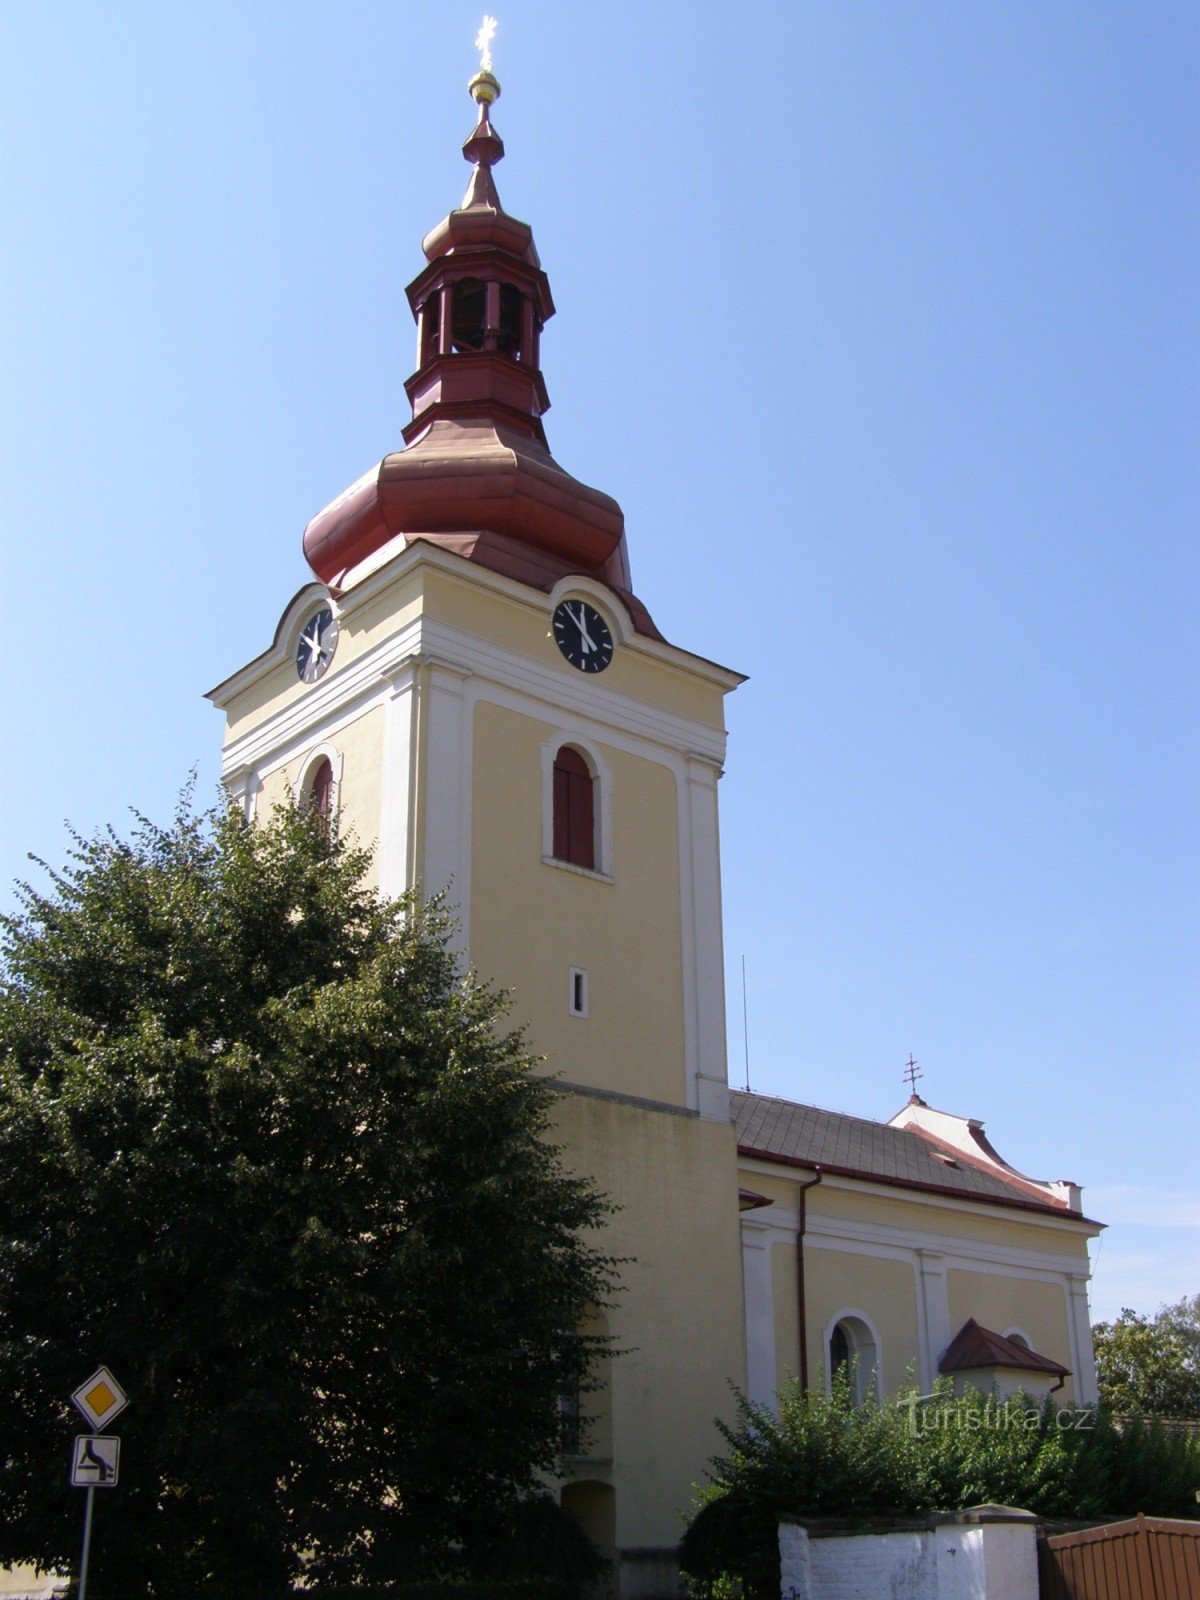 Миловице - церковь